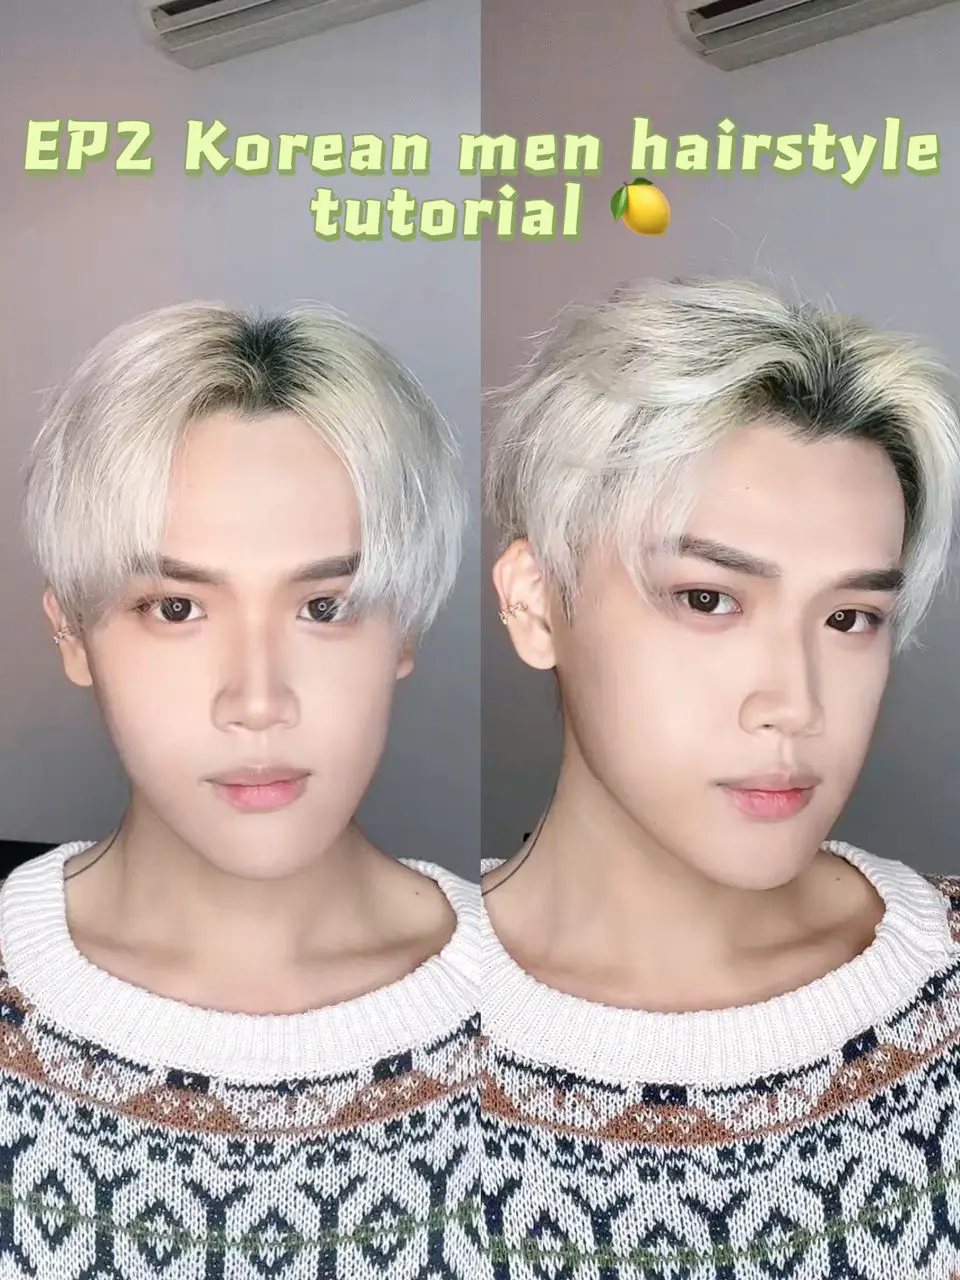 EP2 Korean men hairstyle tutorial | Gallery posted by Leo Panda | Lemon8